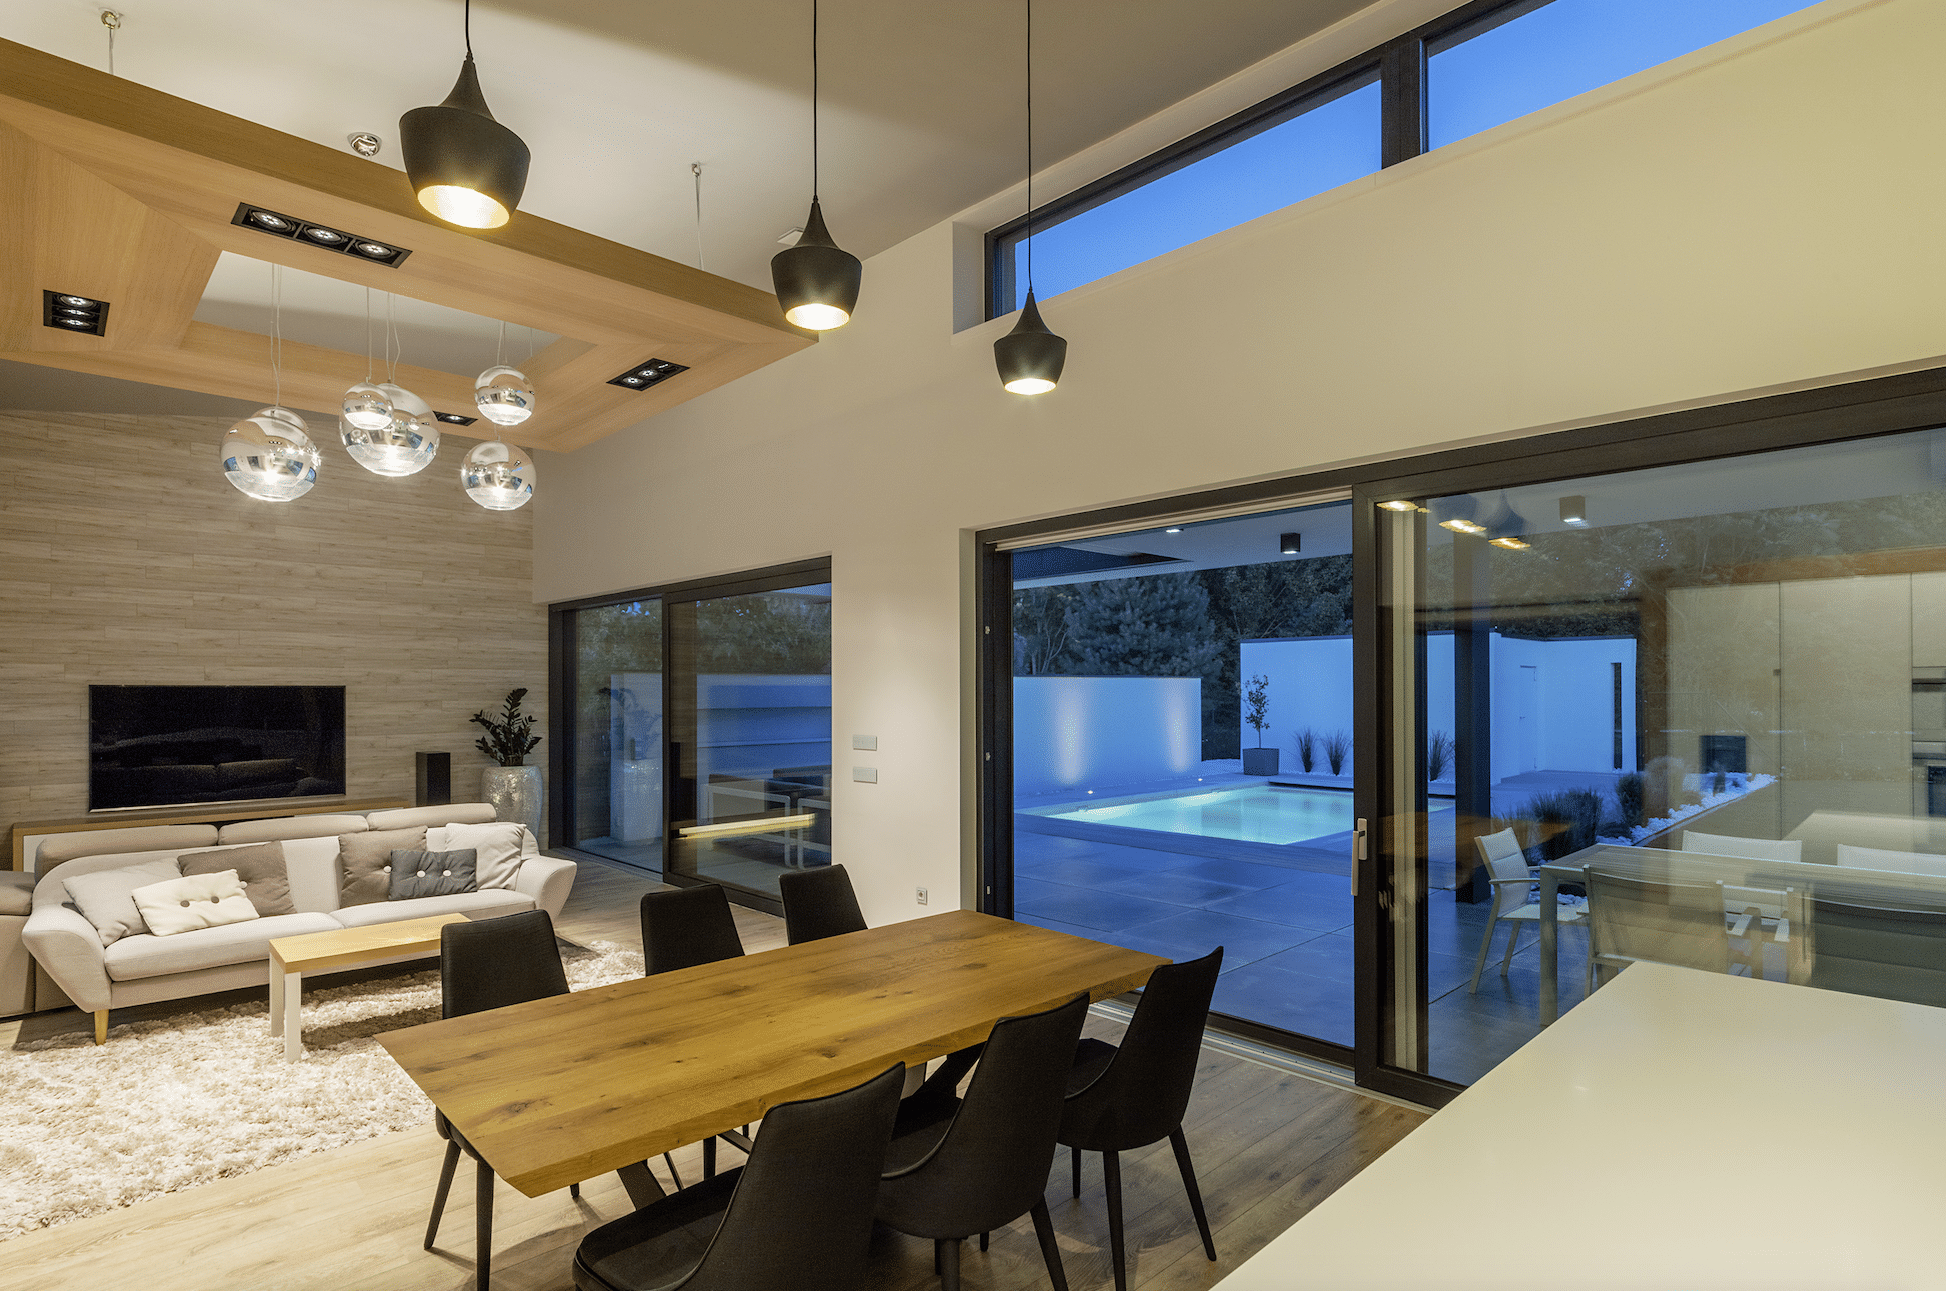 Offenes Wohnkonzept mit gemütlichem Wohnzimmer und Essbereich. Mit Blick durch das Ganzglassystem von Internorm auf die Terrasse und den beleuchteten Pool.